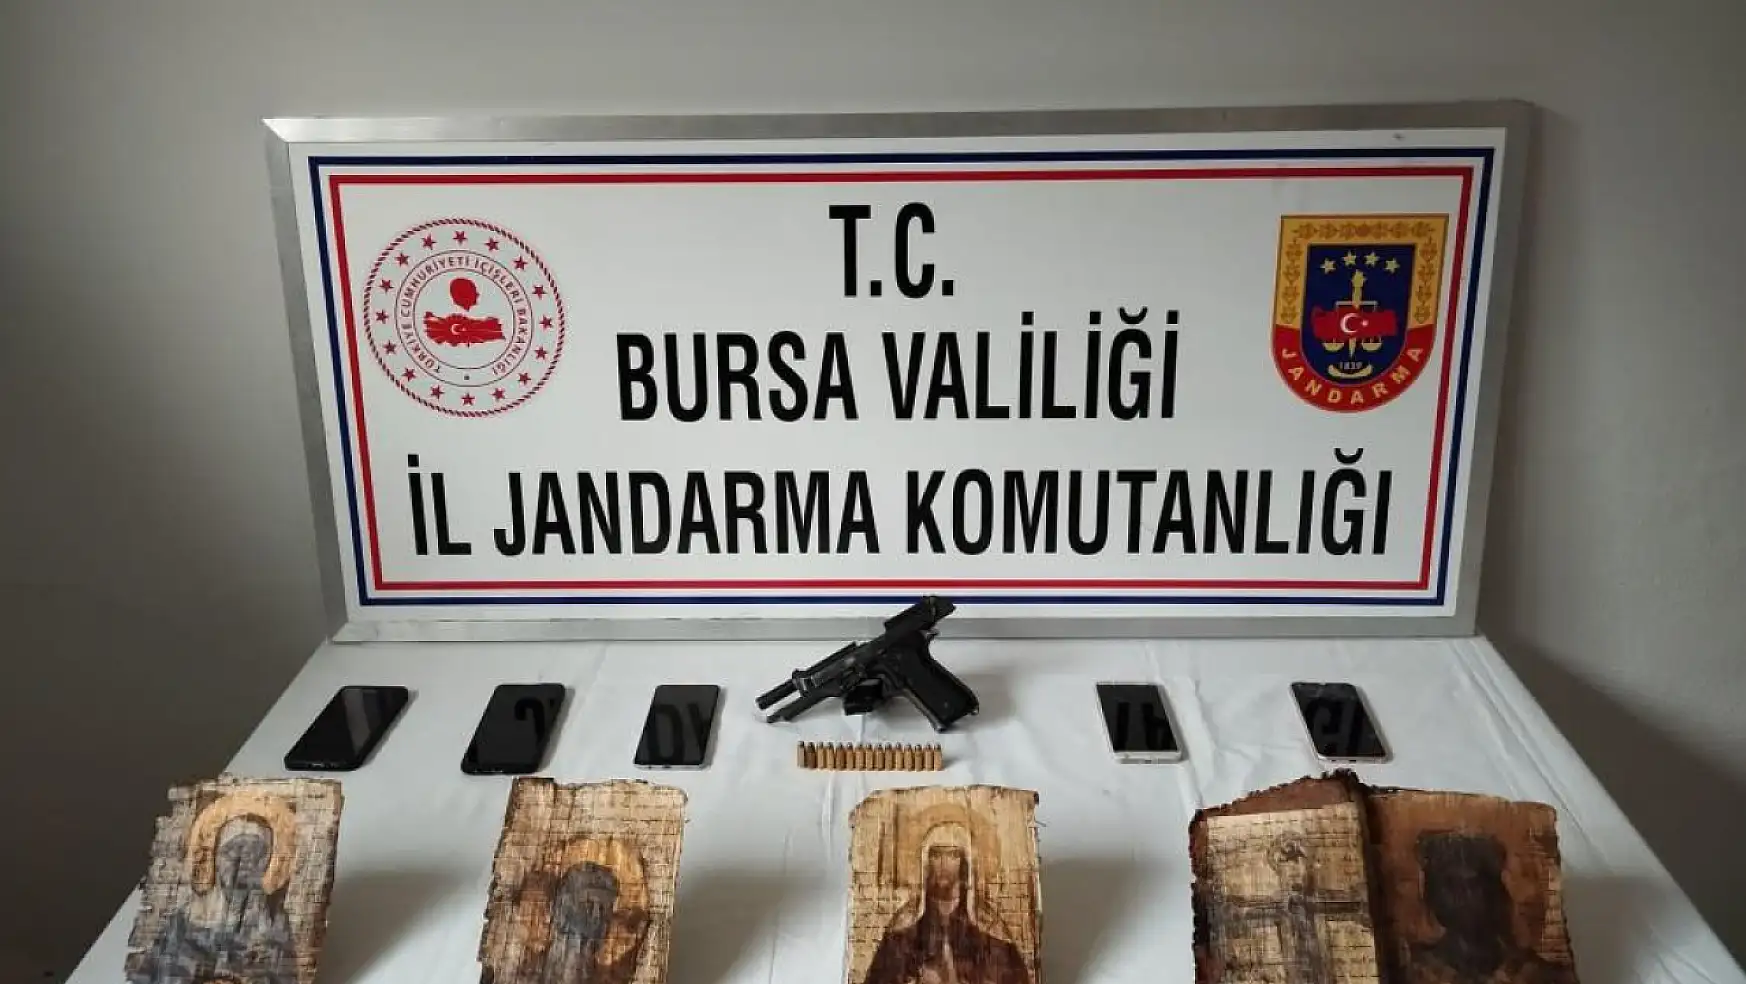 Bursa'da tarihi İncil ele geçirildi: Değeri 10 milyon dolar